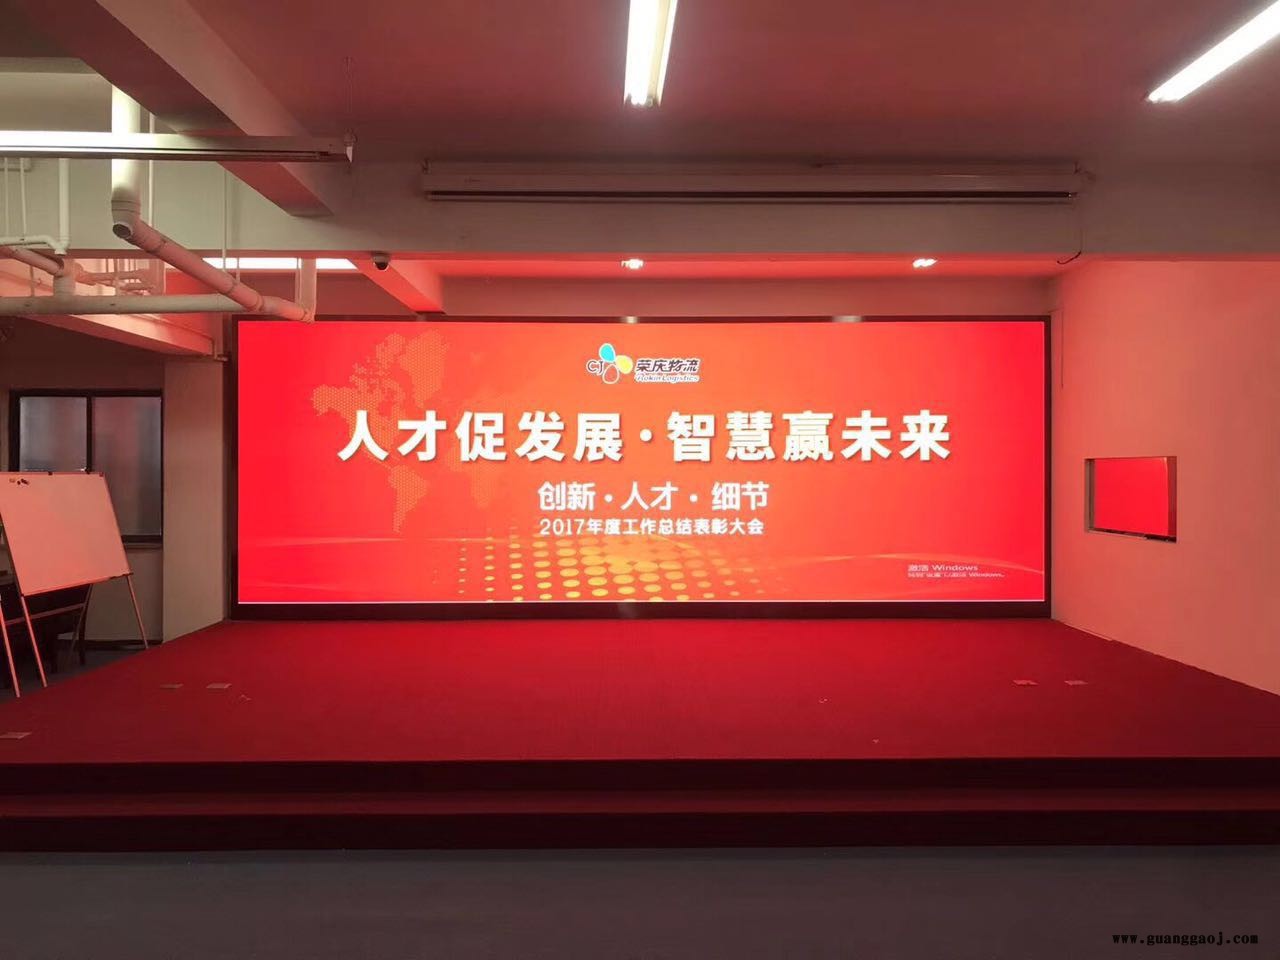 江苏优质LED显示屏在线咨询 信息推荐 上海谙显电子技术供应